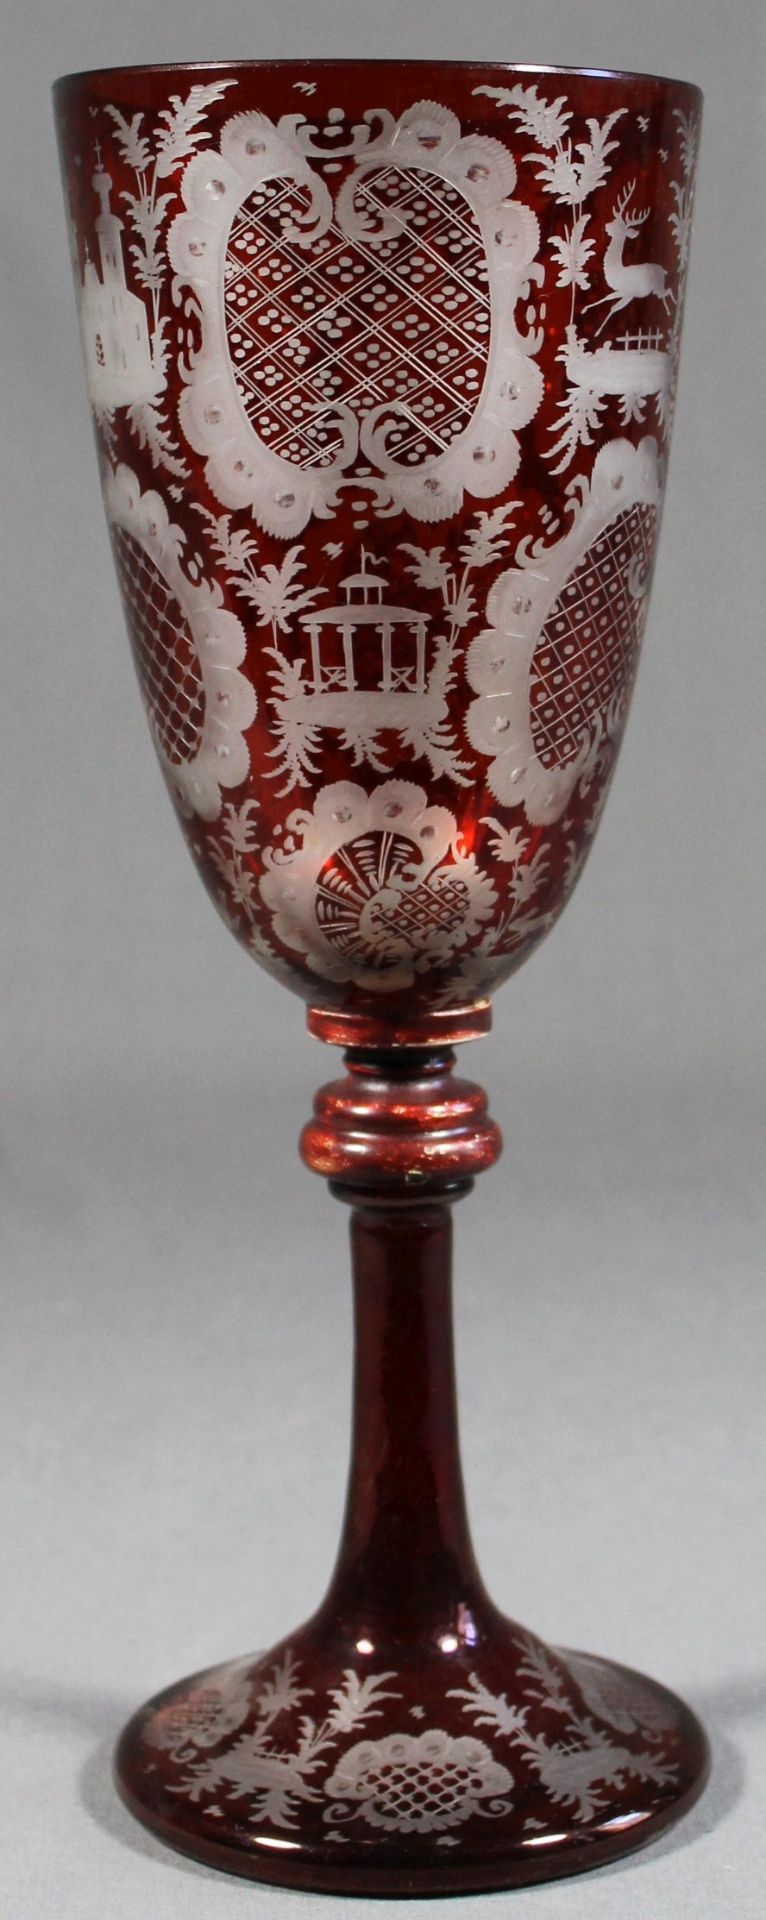 1 großes Pokalglas, mundgeblasen, ausgeschliffener Abriss, rubinrot lasiert und dekorativ